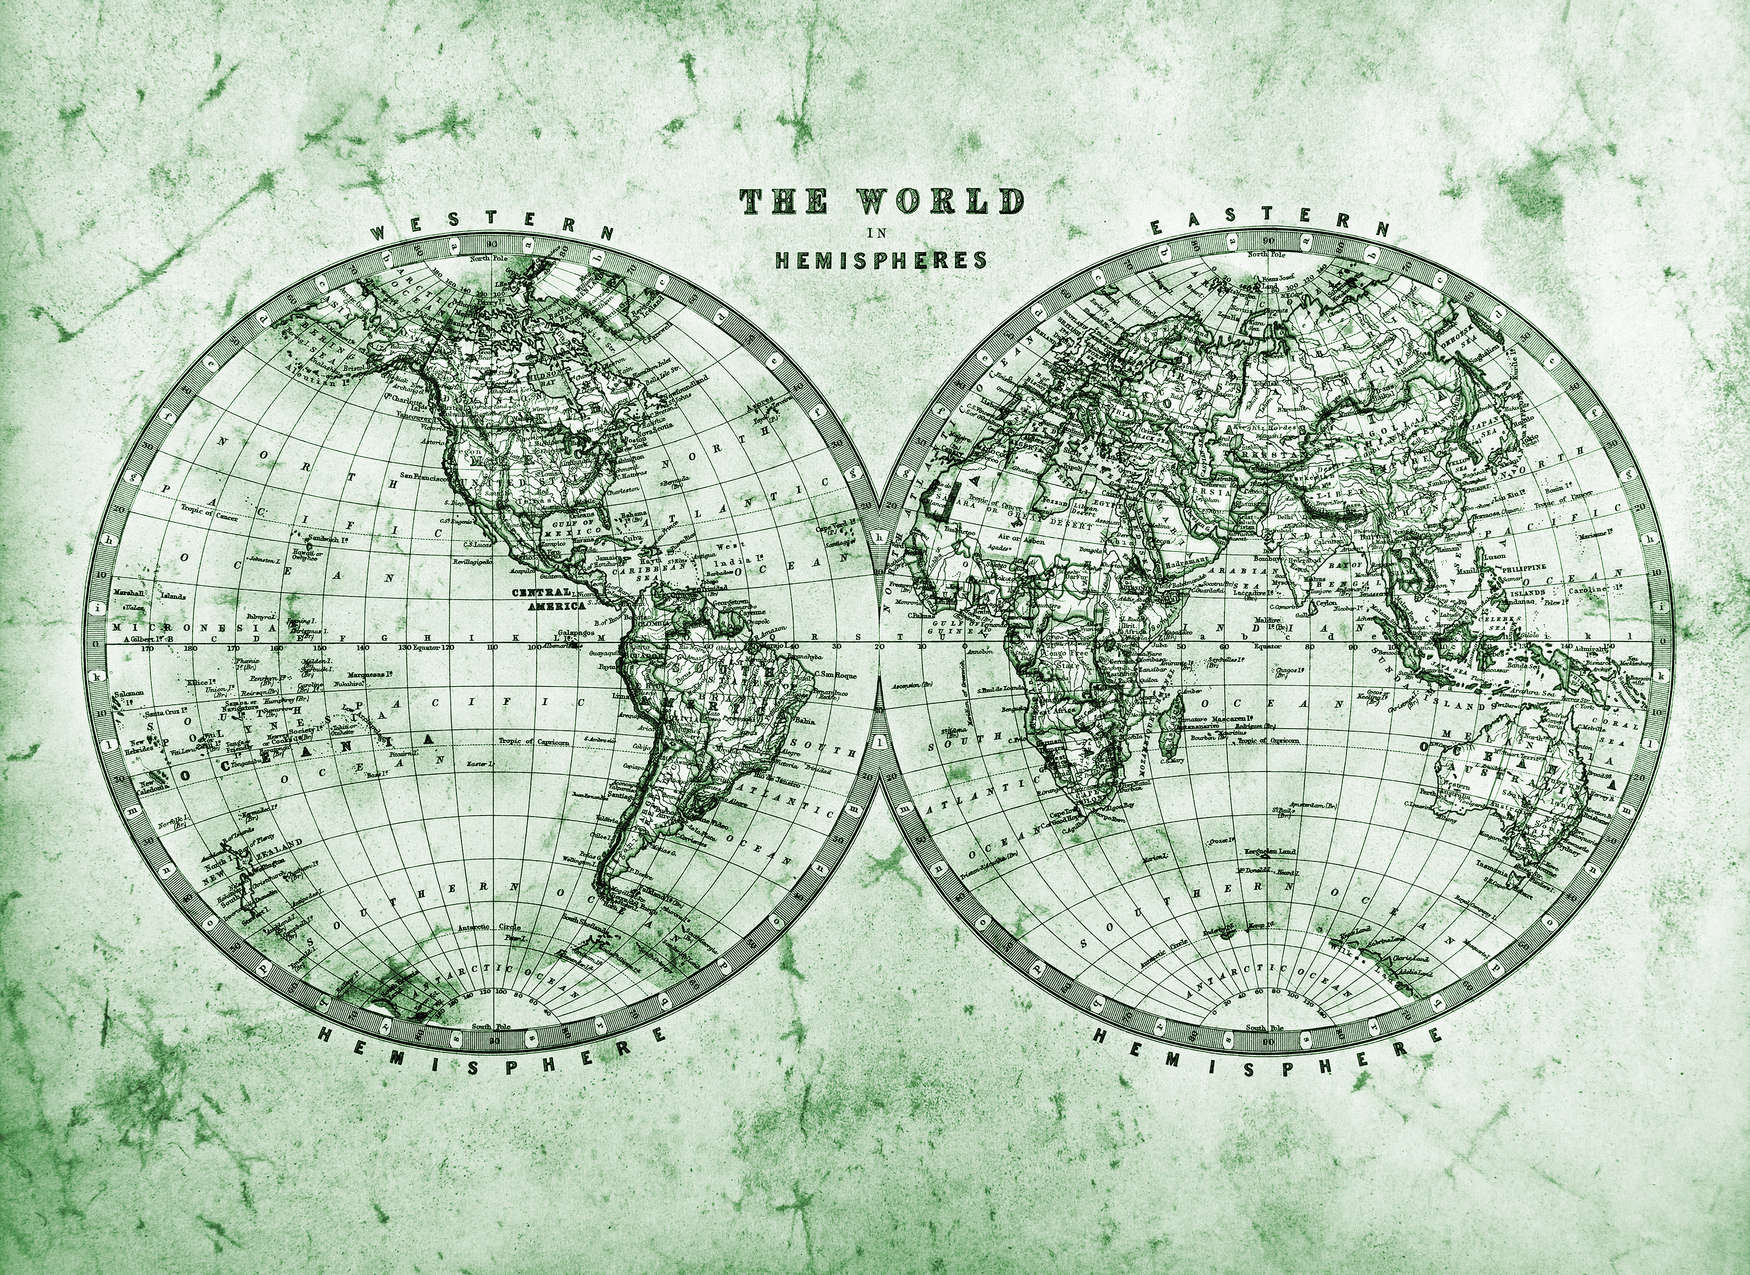             Mappa del mondo vintage in emisferi - Verde, grigio, bianco
        